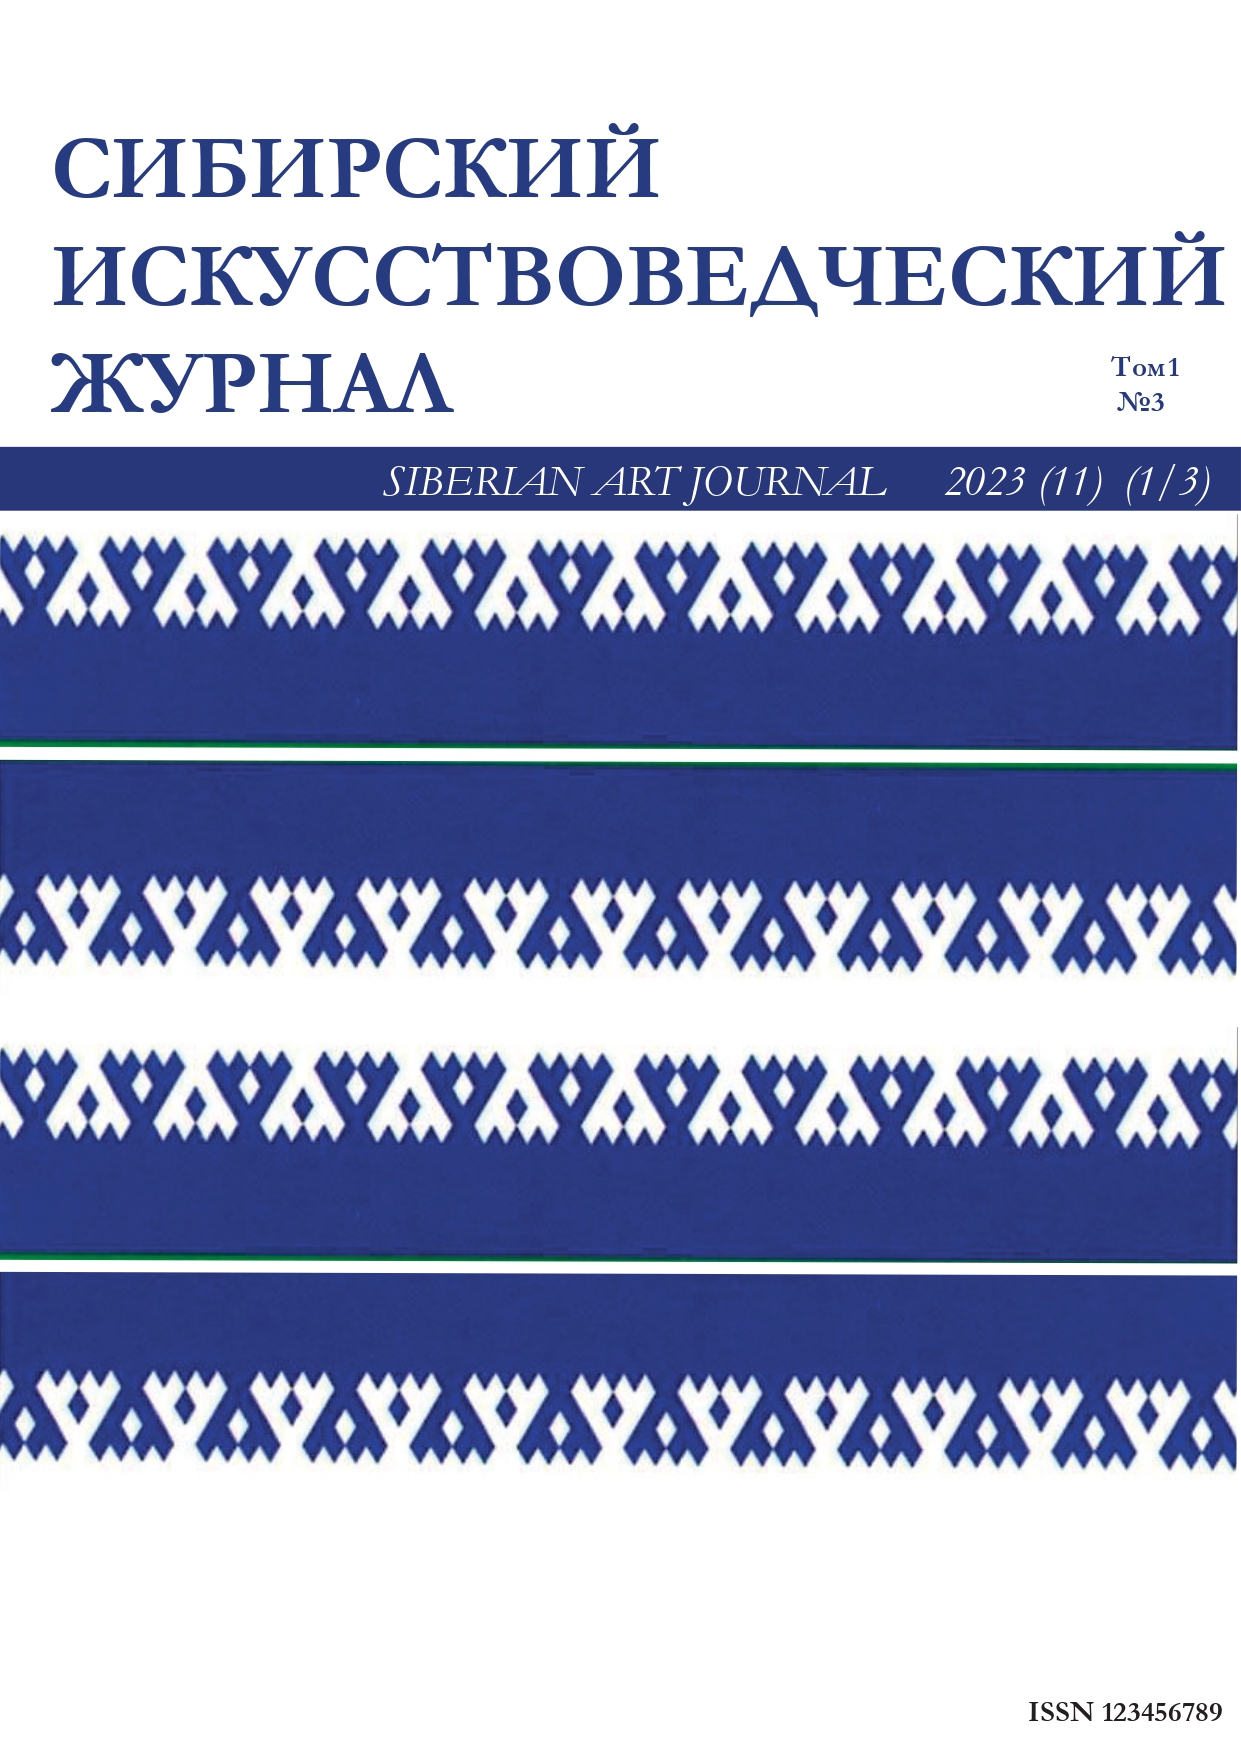                         Siberian Art History Journal
            